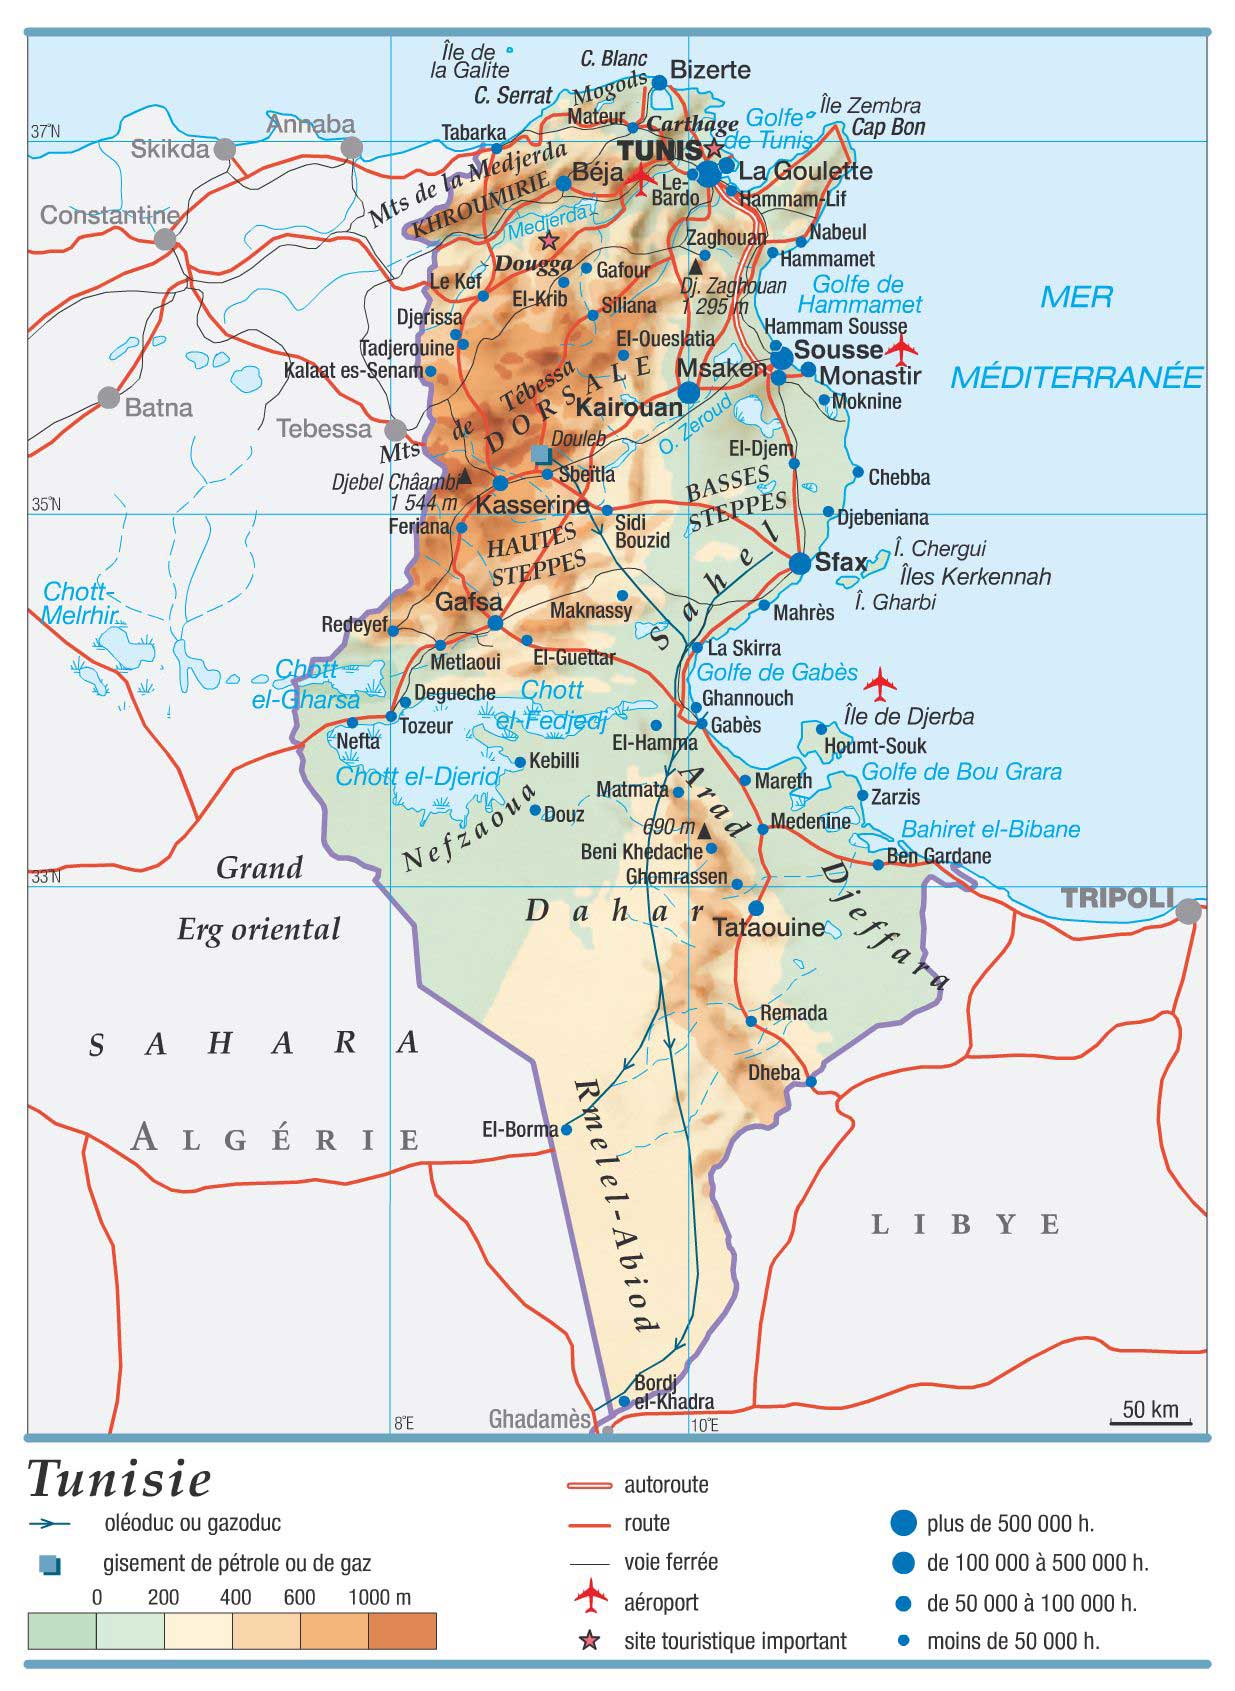 Tunisie - Carte du monde » Vacances - Guide Voyage